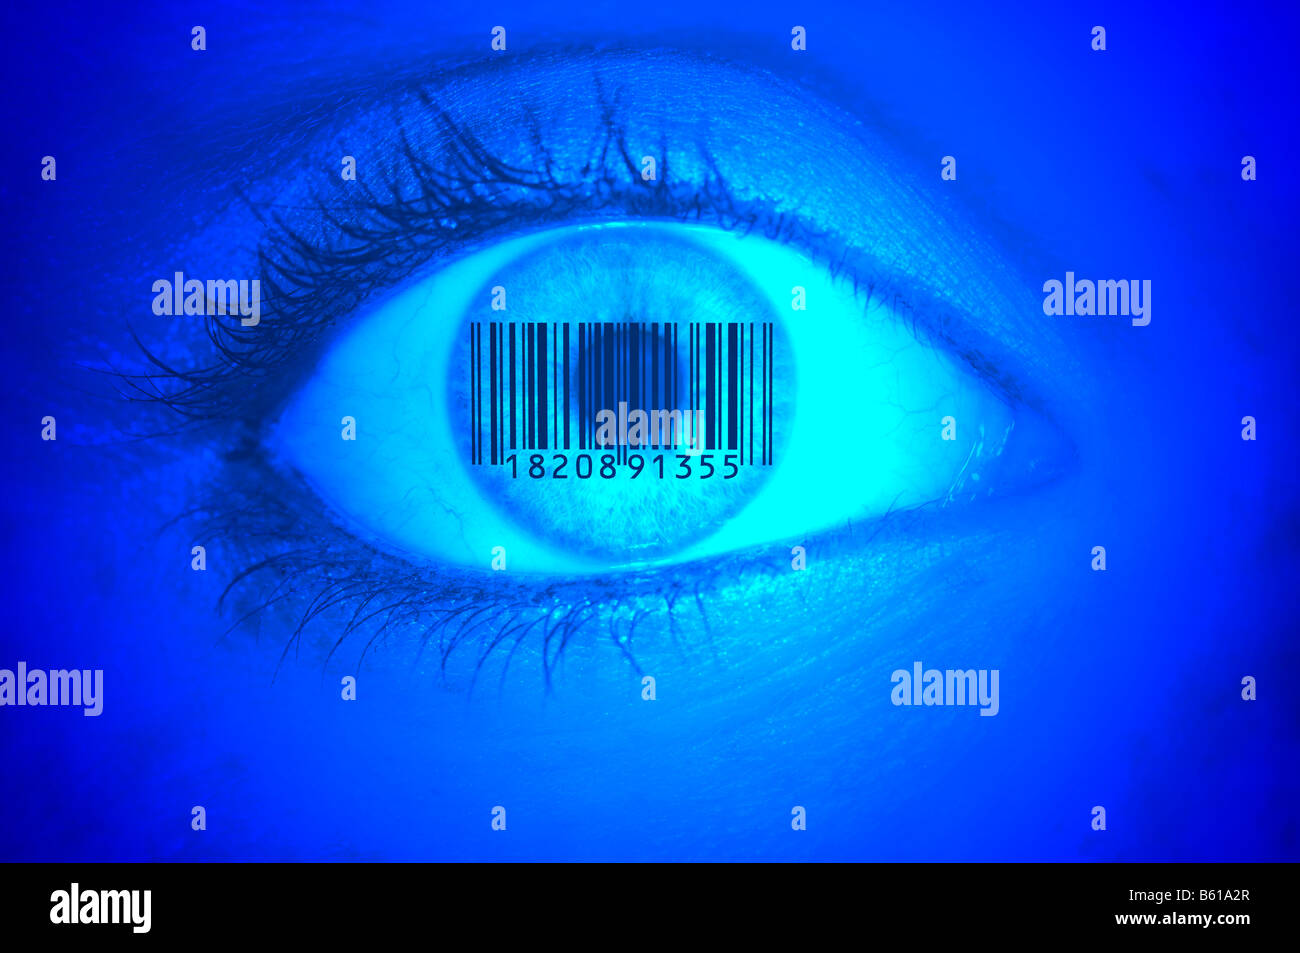 Detailbild eines Auges mit Barcode EAN, europäische Artikelnummer auf der Iris, symbolische Bild Glaswissenschaft Stockfoto